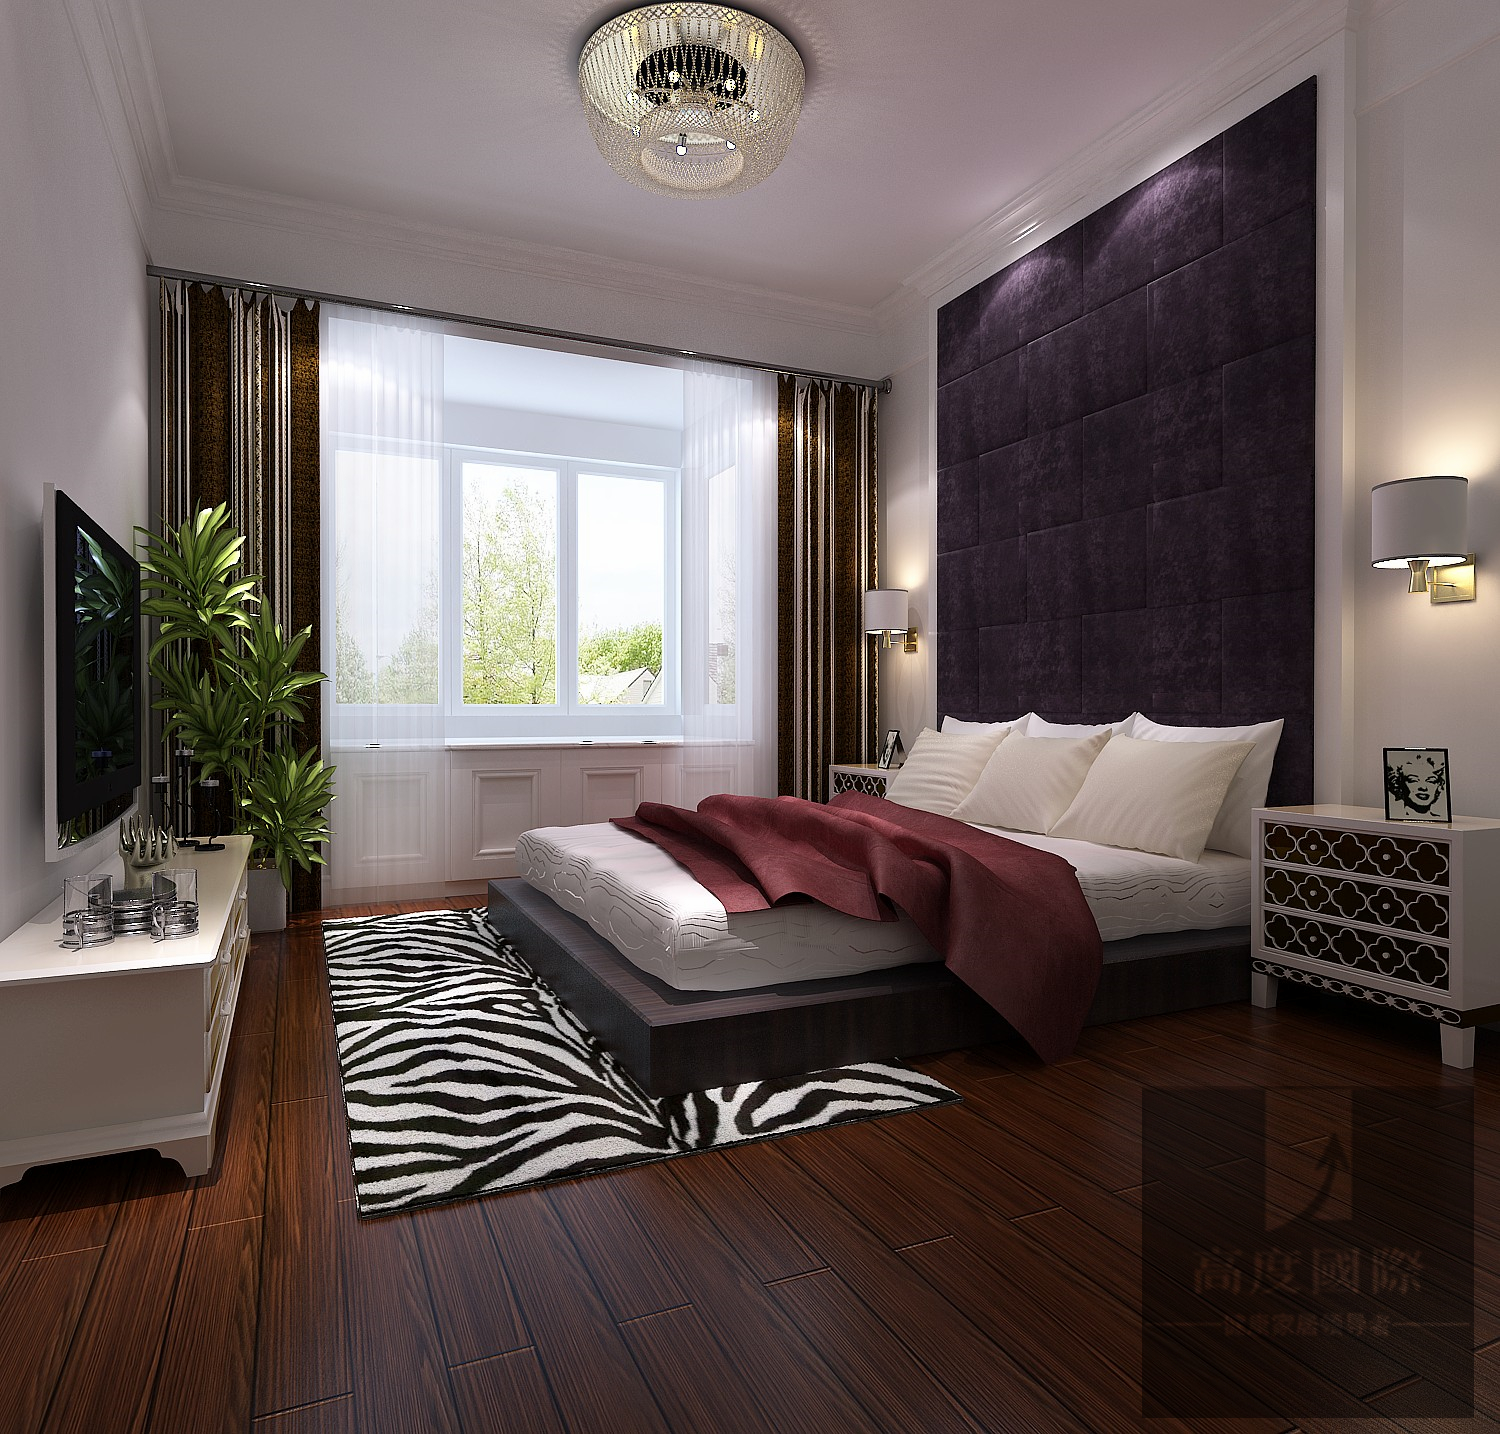 三居 欧式 休闲 舒适 卧室图片来自高度国际装饰韩冰在世华泊郡130平米休闲舒适的分享